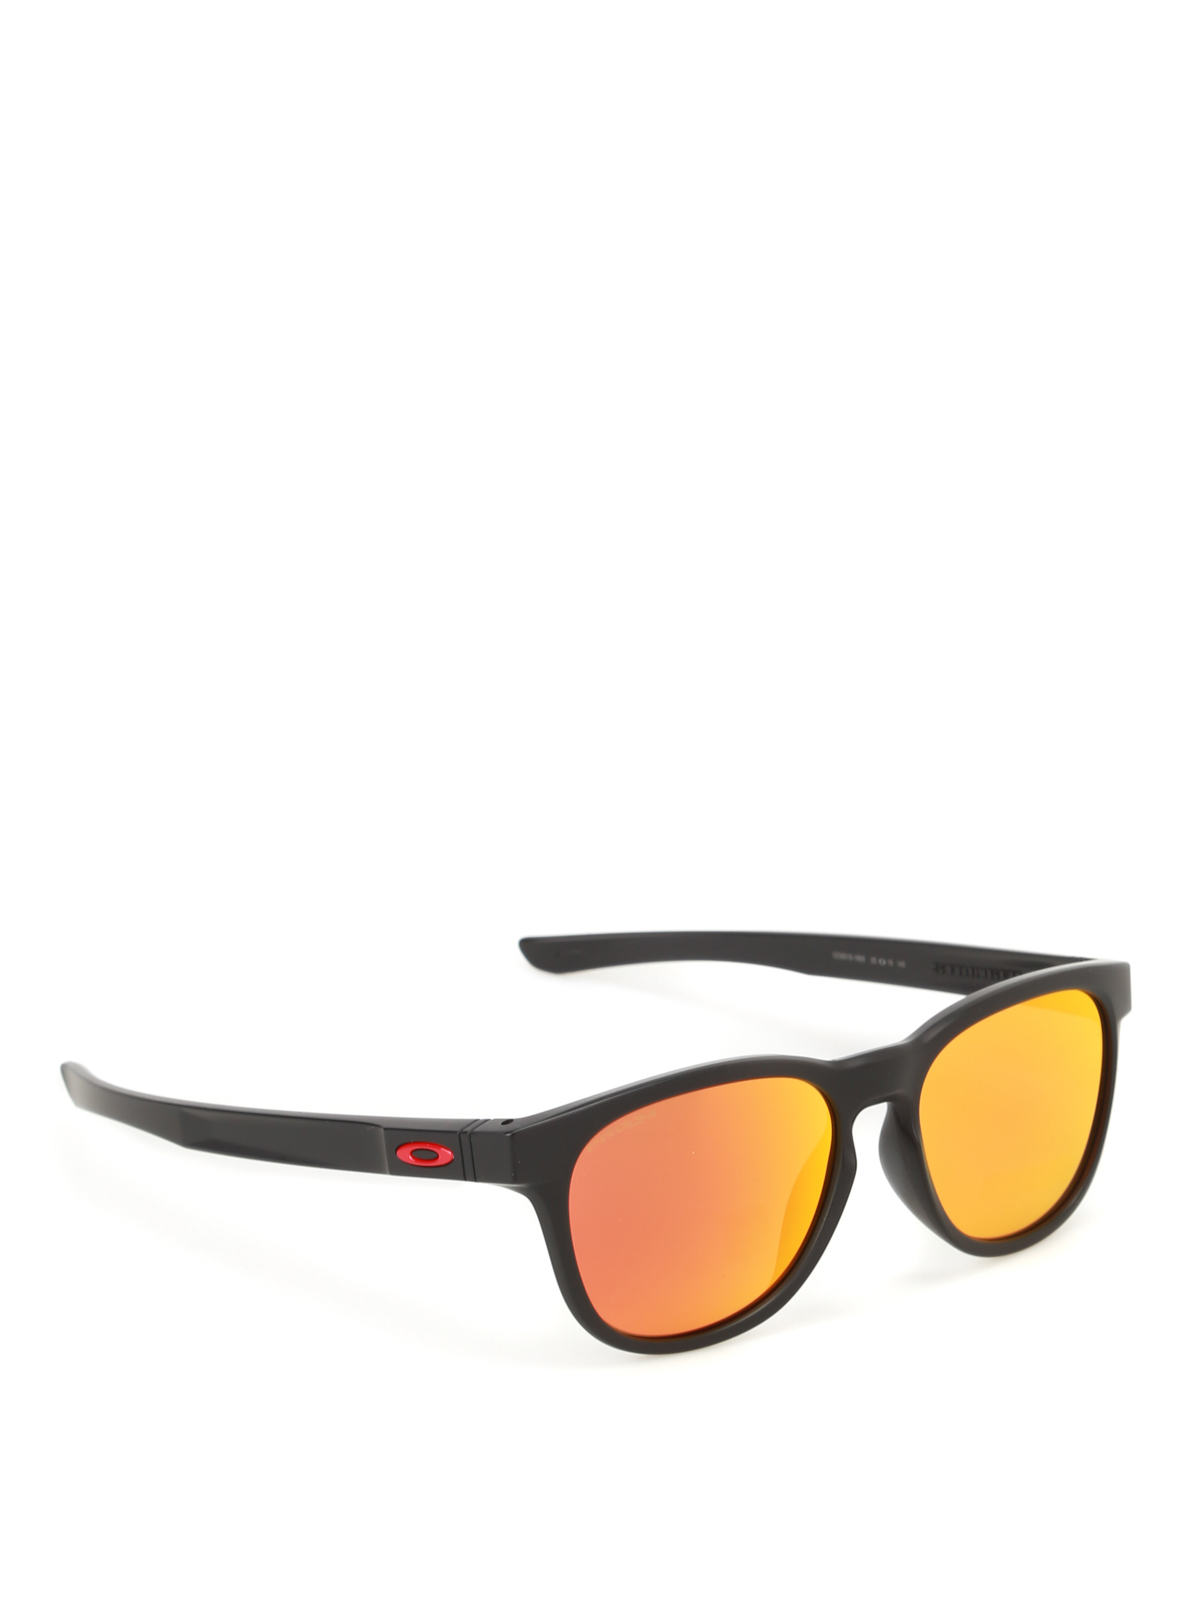 mirrored oakley sunglasses